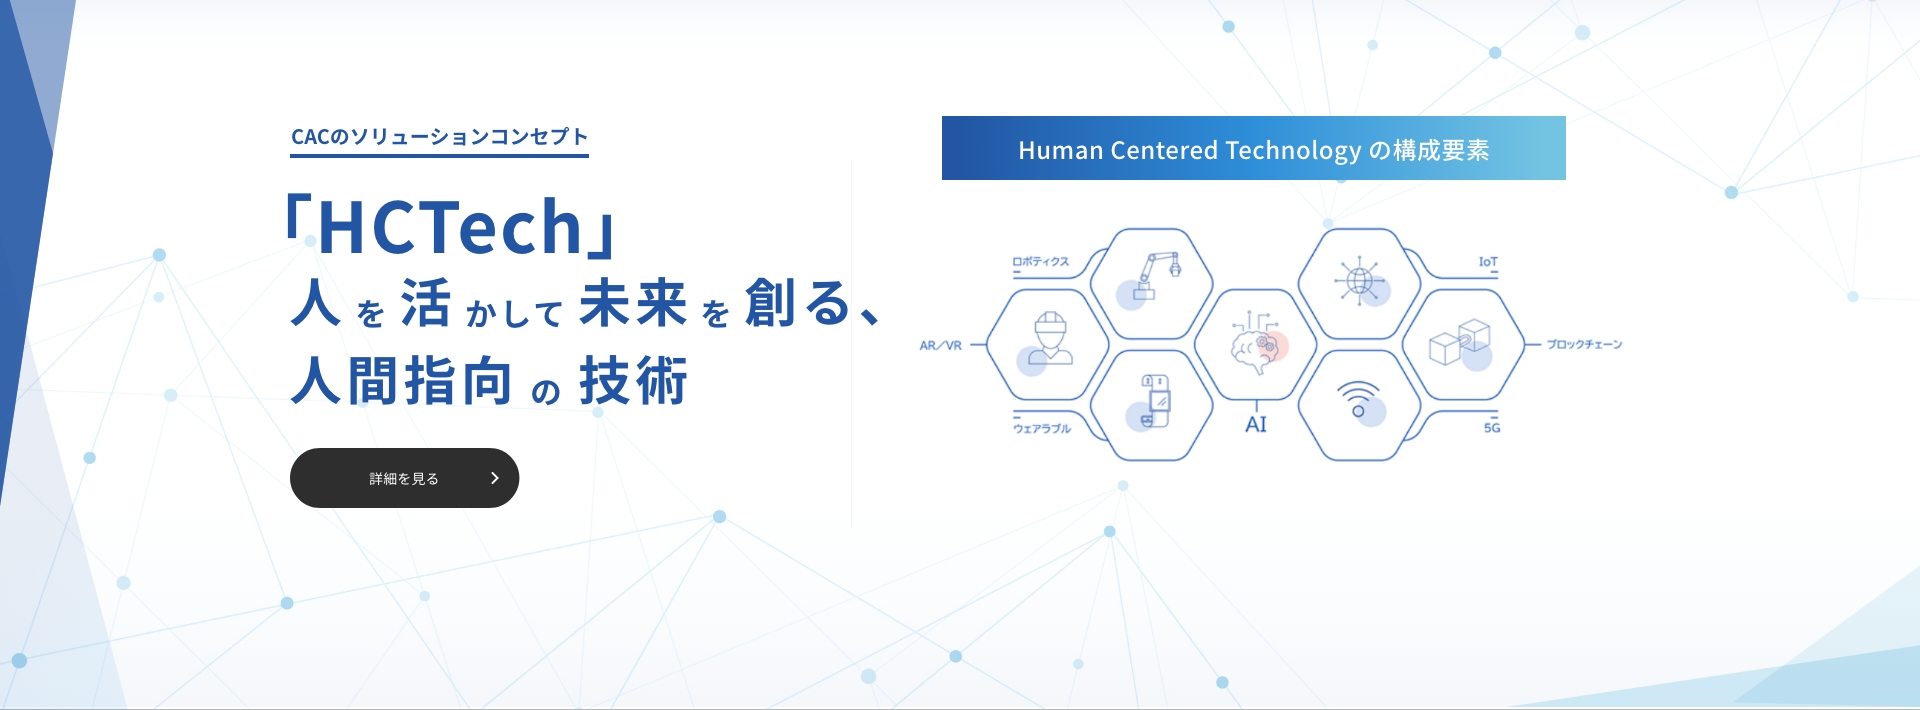 CACのソリューションコンセプト「HCTech」人を活かして未来を創る、人間指向の技術